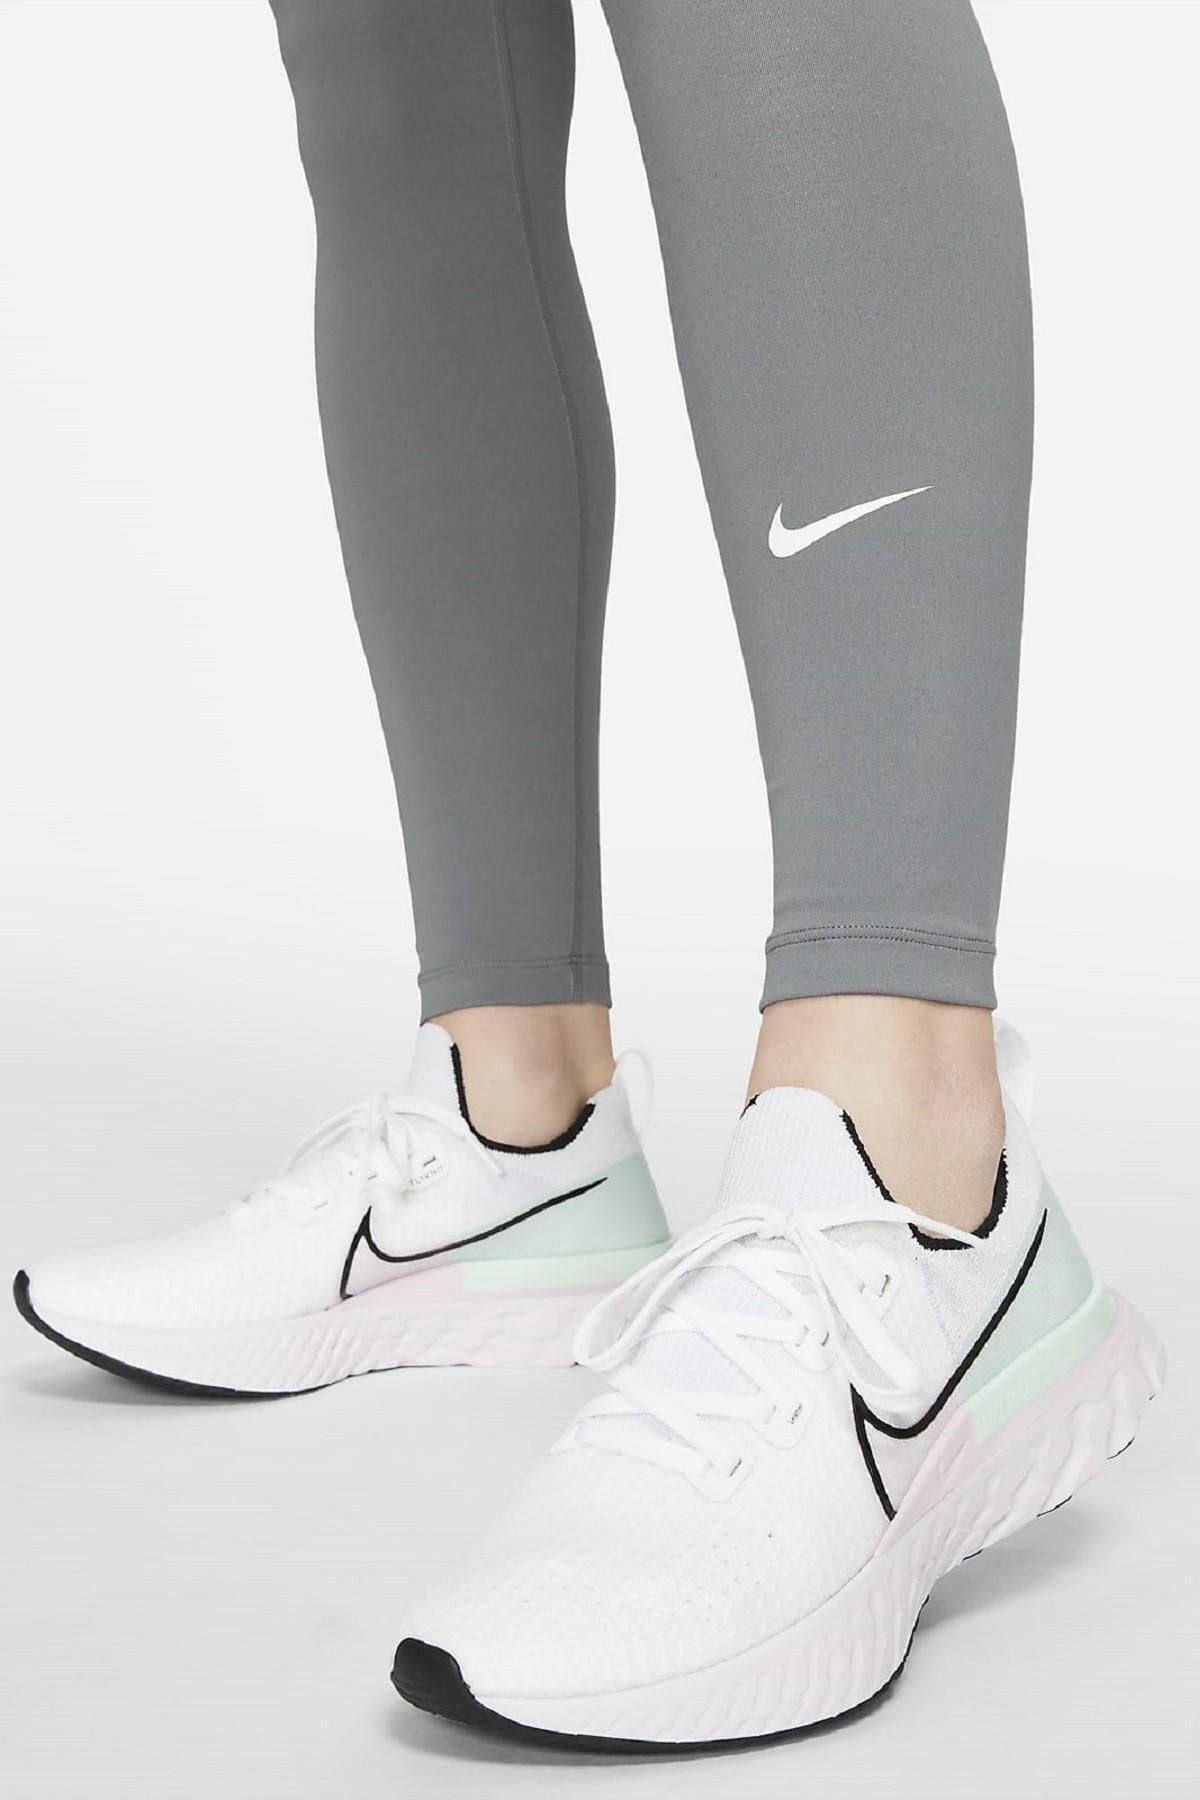 Nike One Women's High Rise Leggings Maternity High Waisted Women's Leggings